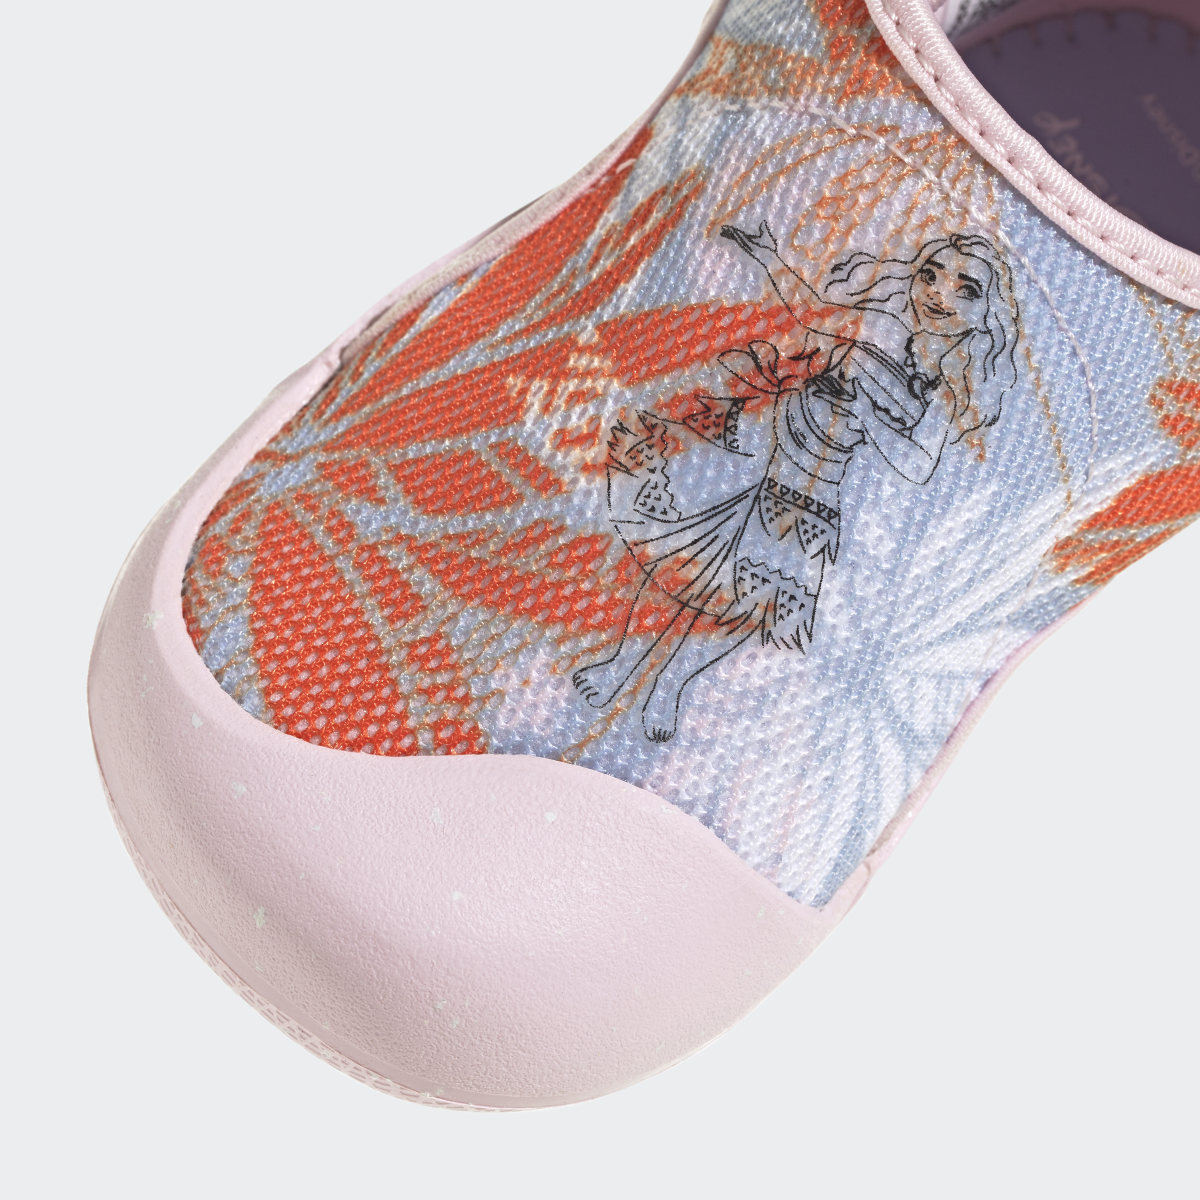 Adidas Sandálias de Natação AltaVenture 2.0 Vaiana adidas x Disney. 9